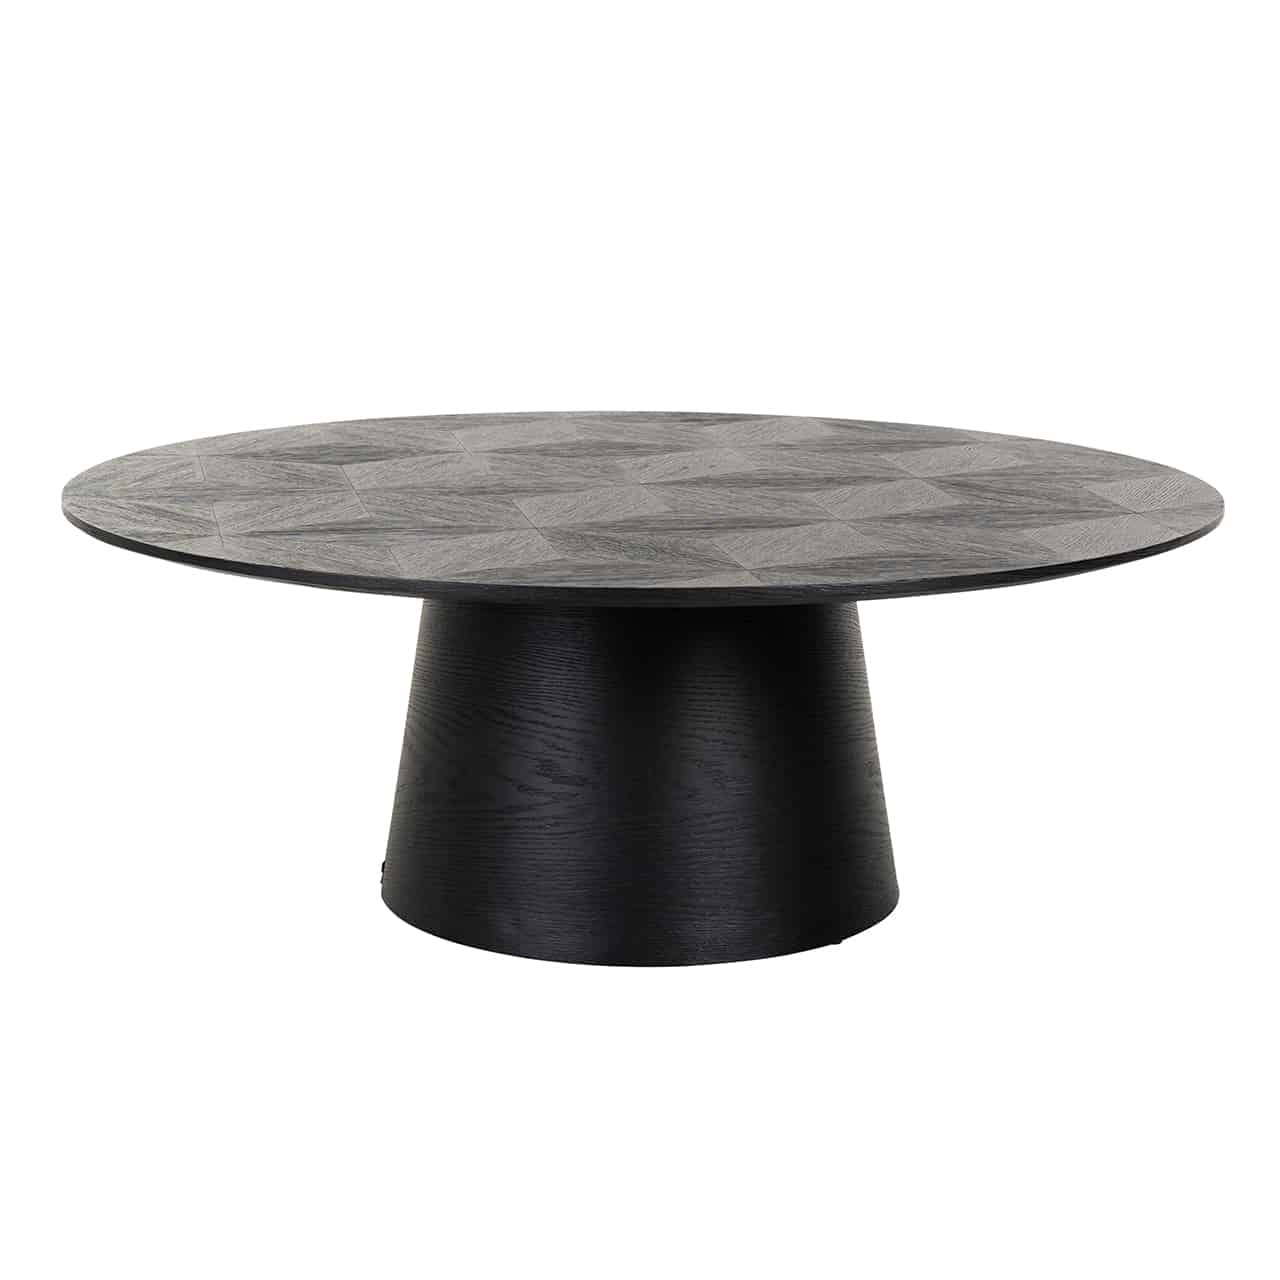 Schwarzer Couchtisch; auf einem trommelförmigen, unten im Radius etwas breiteren Tischgestell ist eine  dünne, runde Tischplatte angebracht.